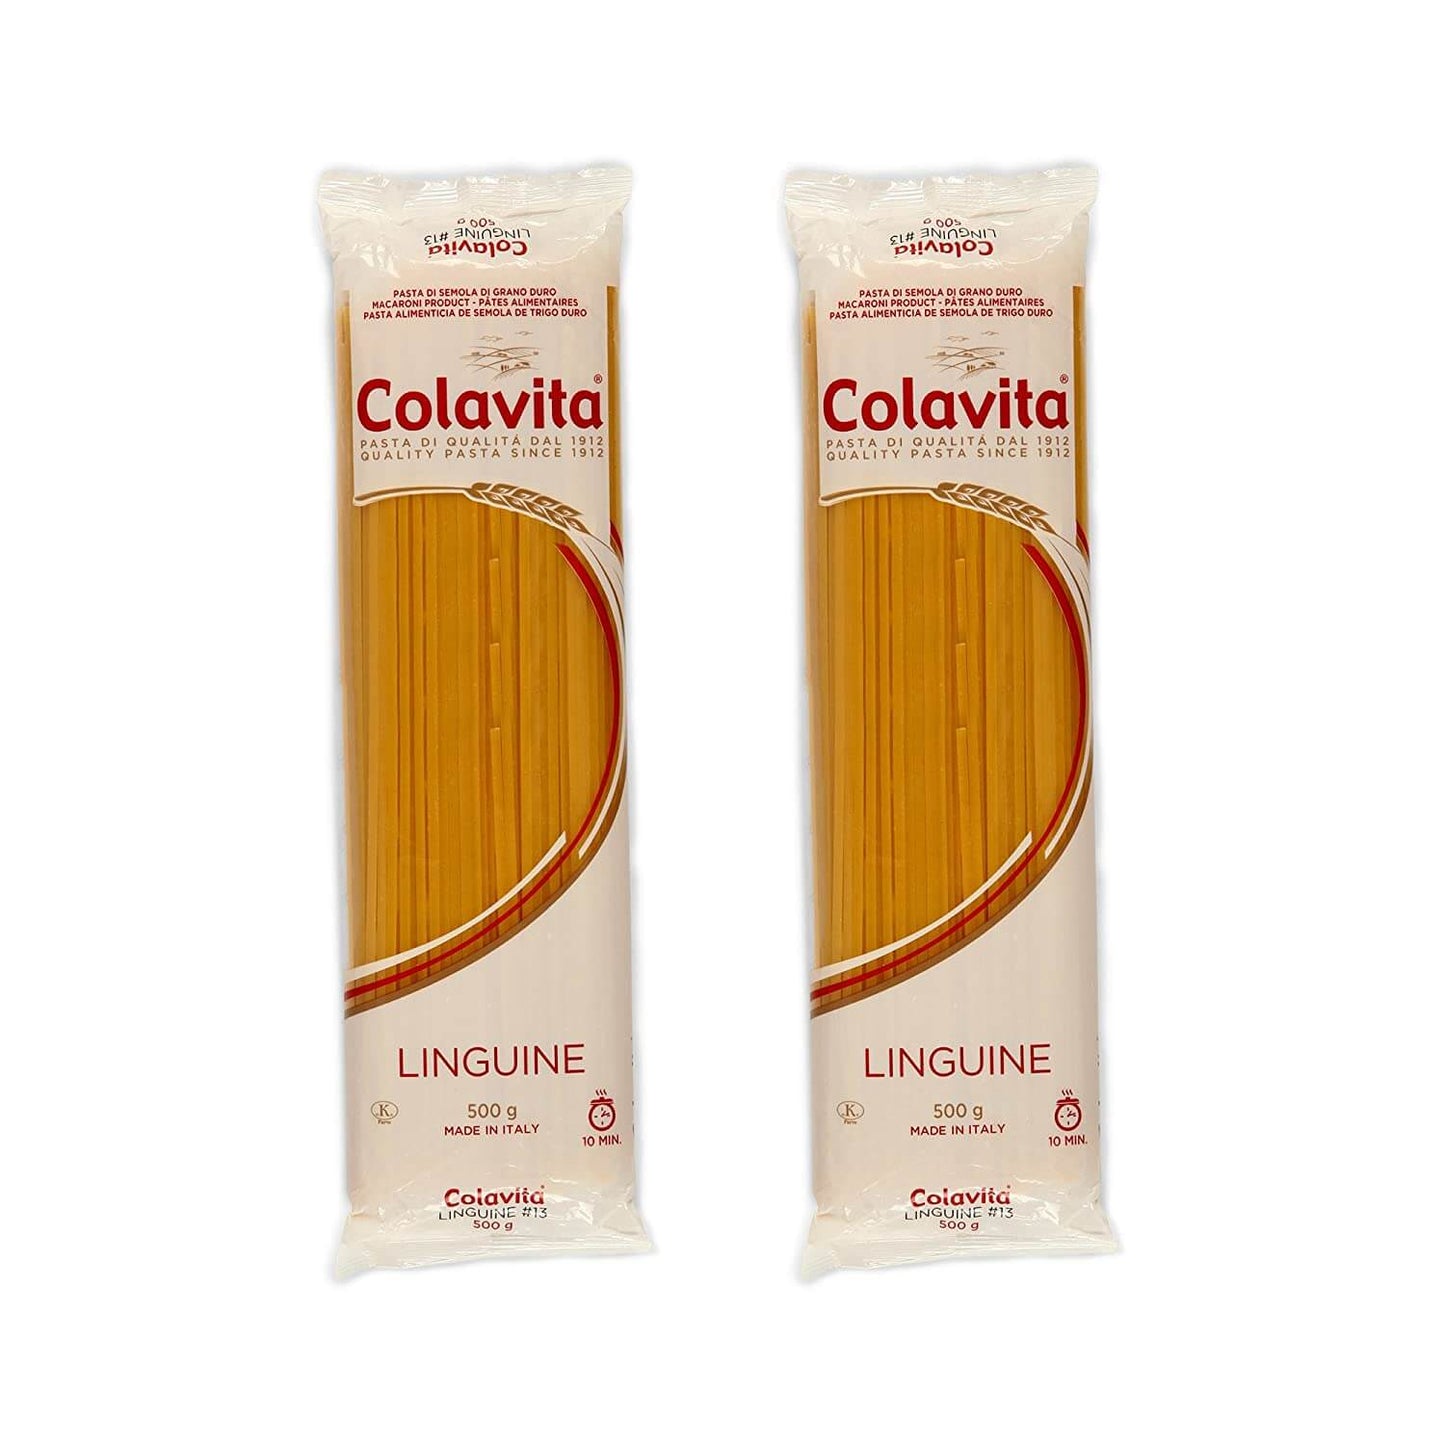 LinguineDurum Wheat Pasta 500 g (Combo Pack of 2)